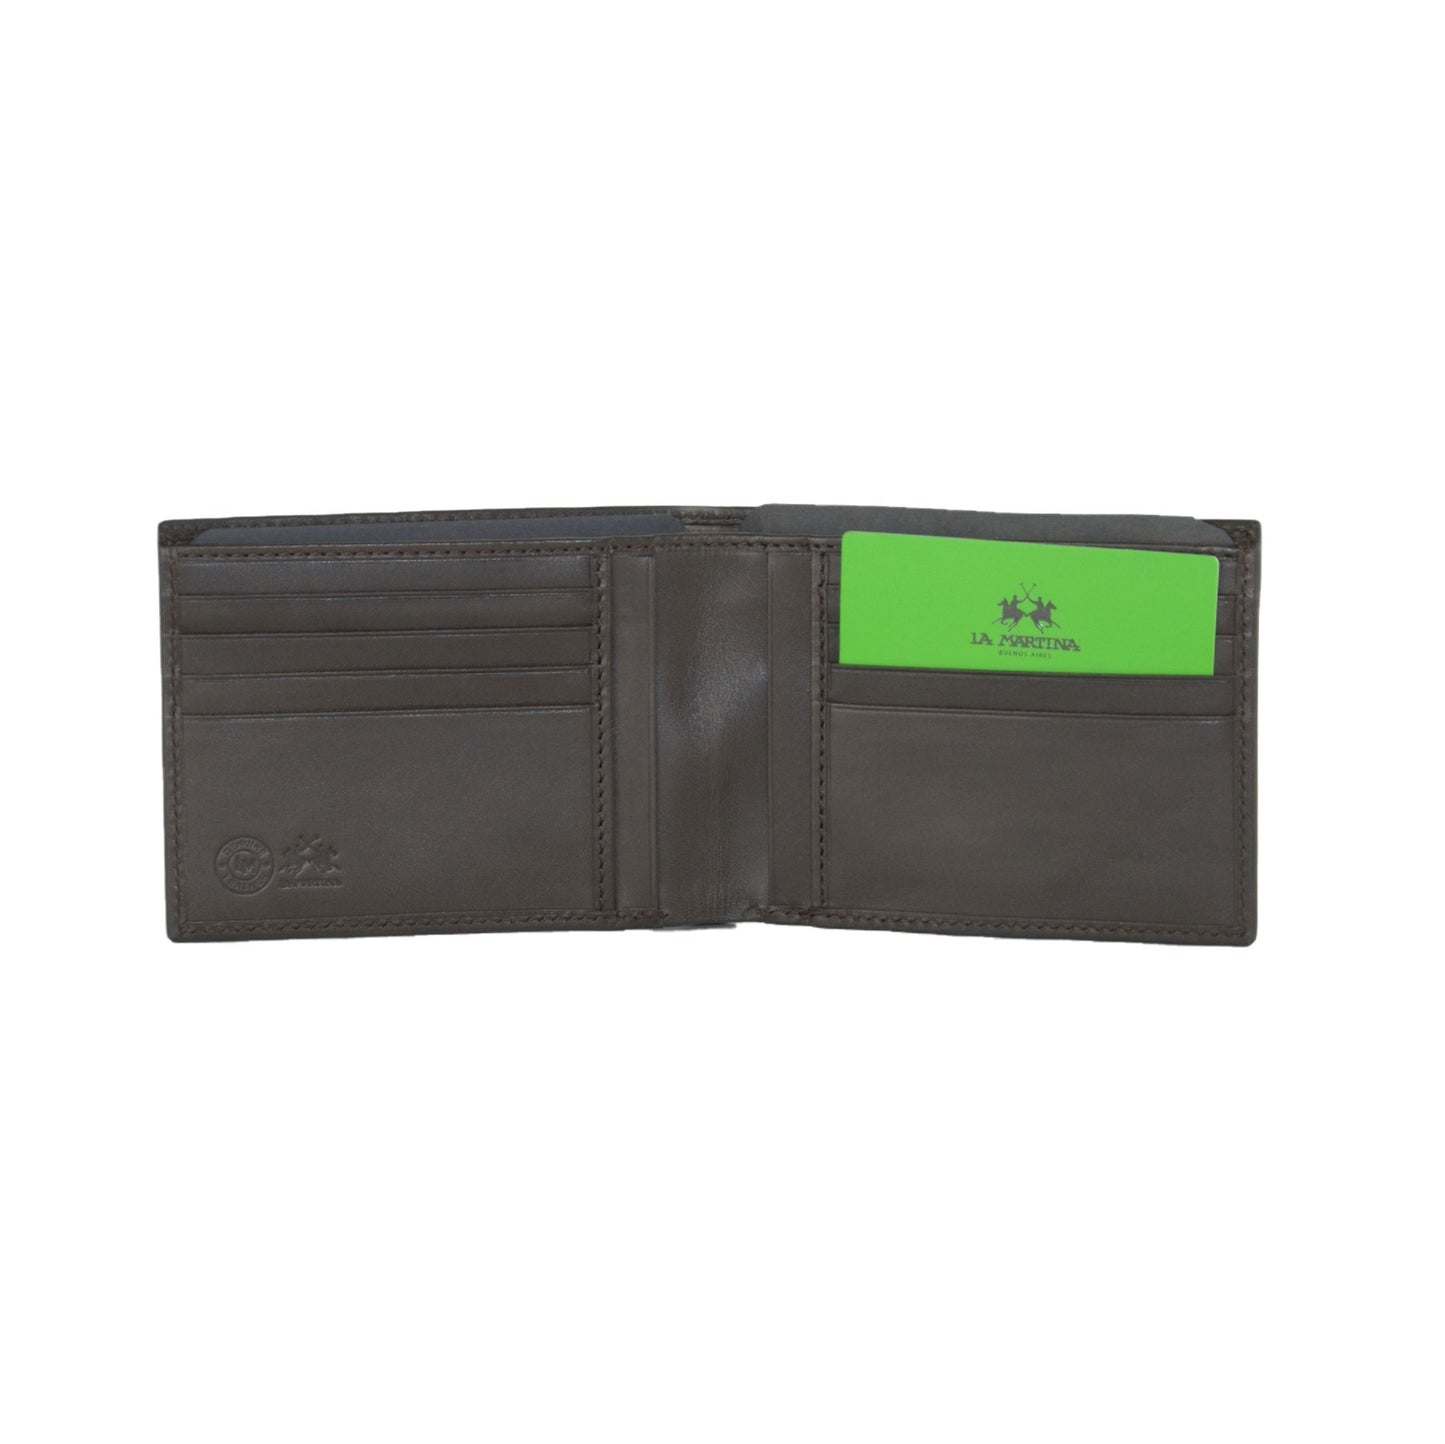 Elegant Dark Brown Leather Wallet